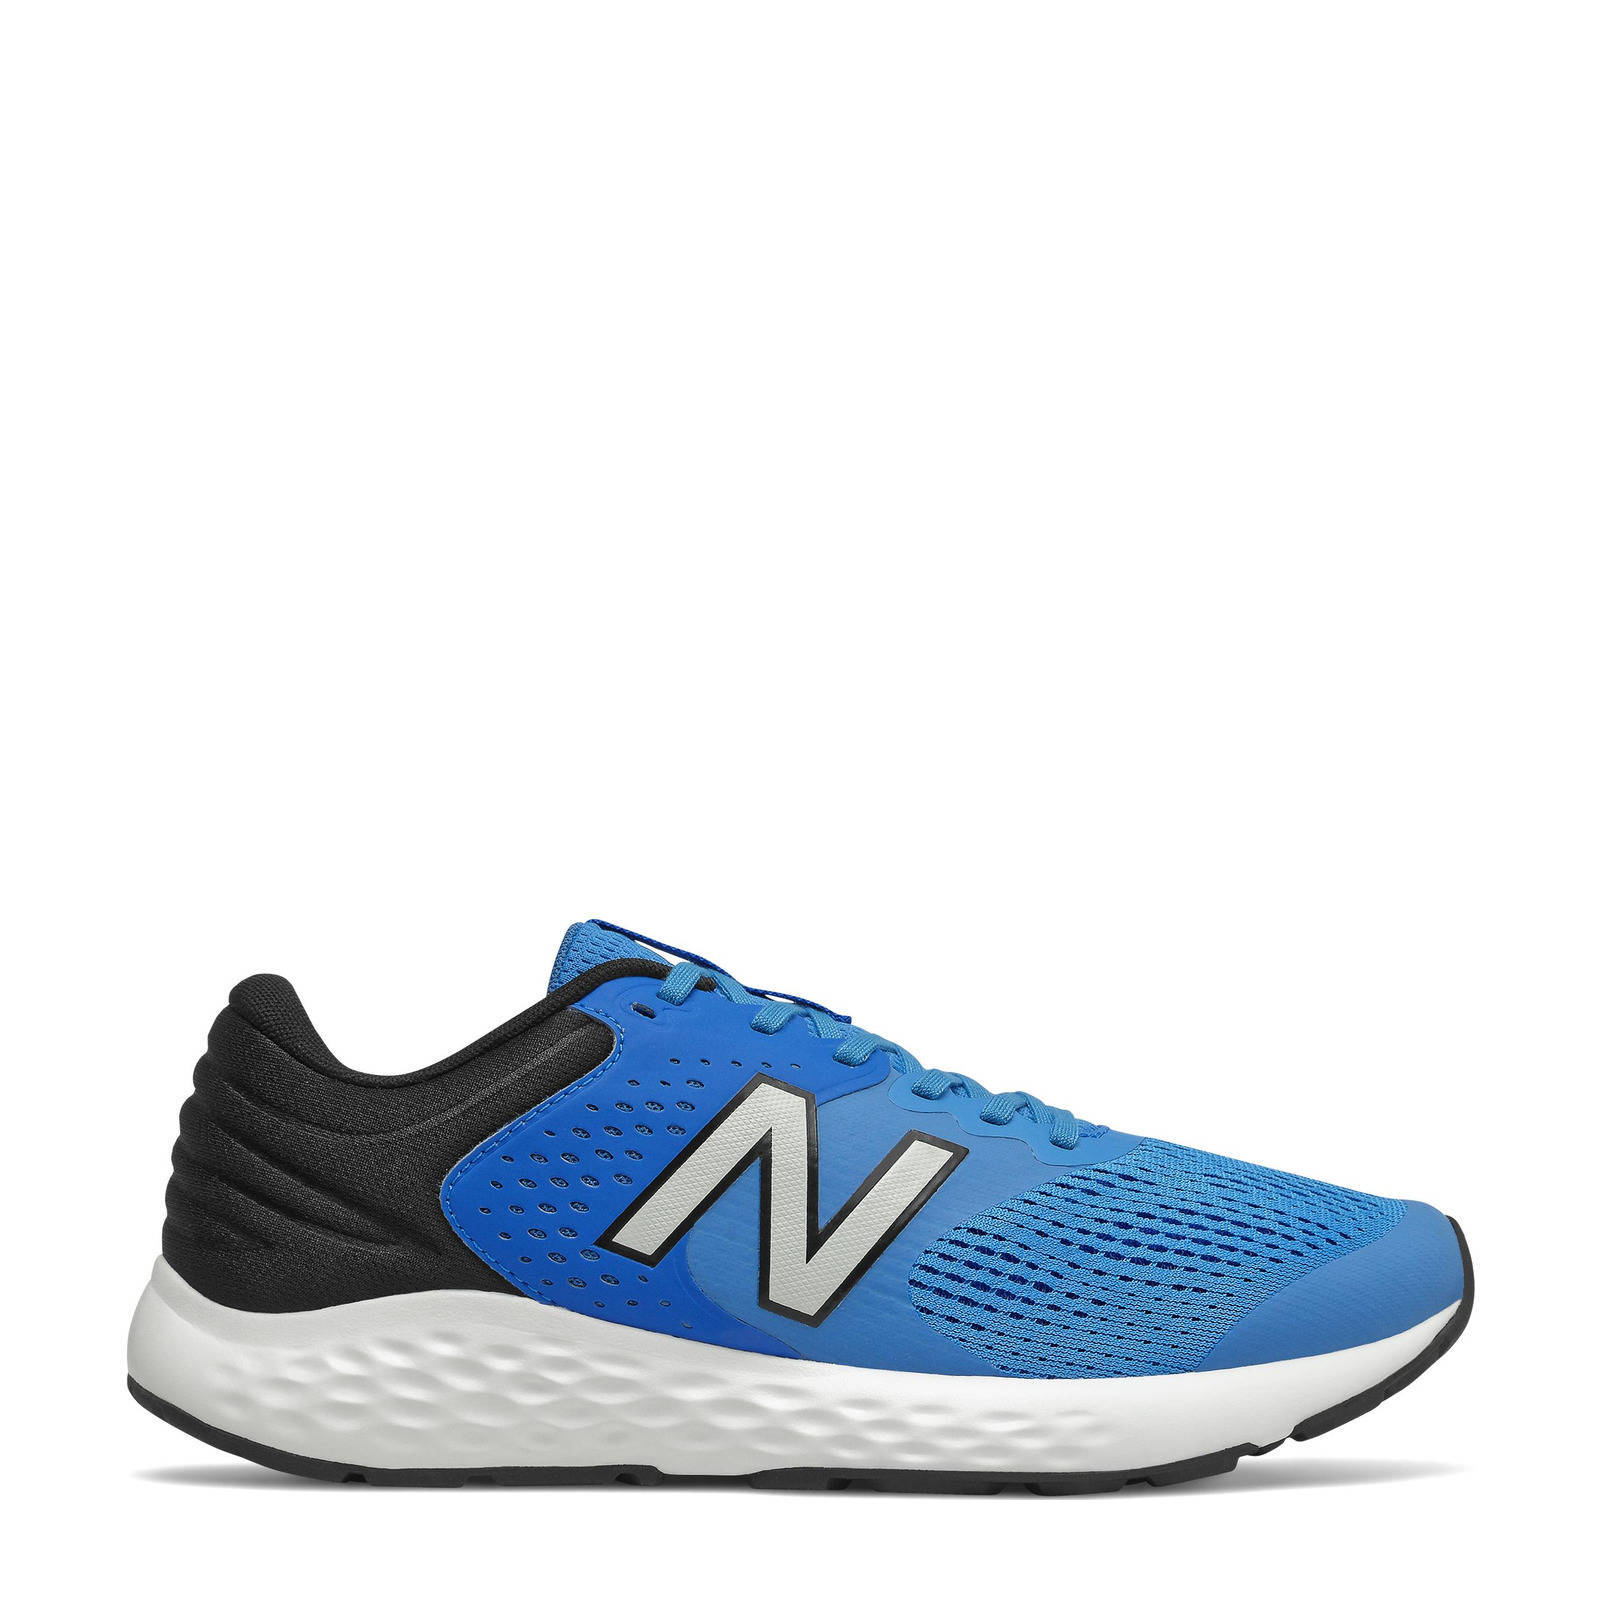 New Balance 520 hardloopschoenen kobaltblauw/zwart/wit online kopen